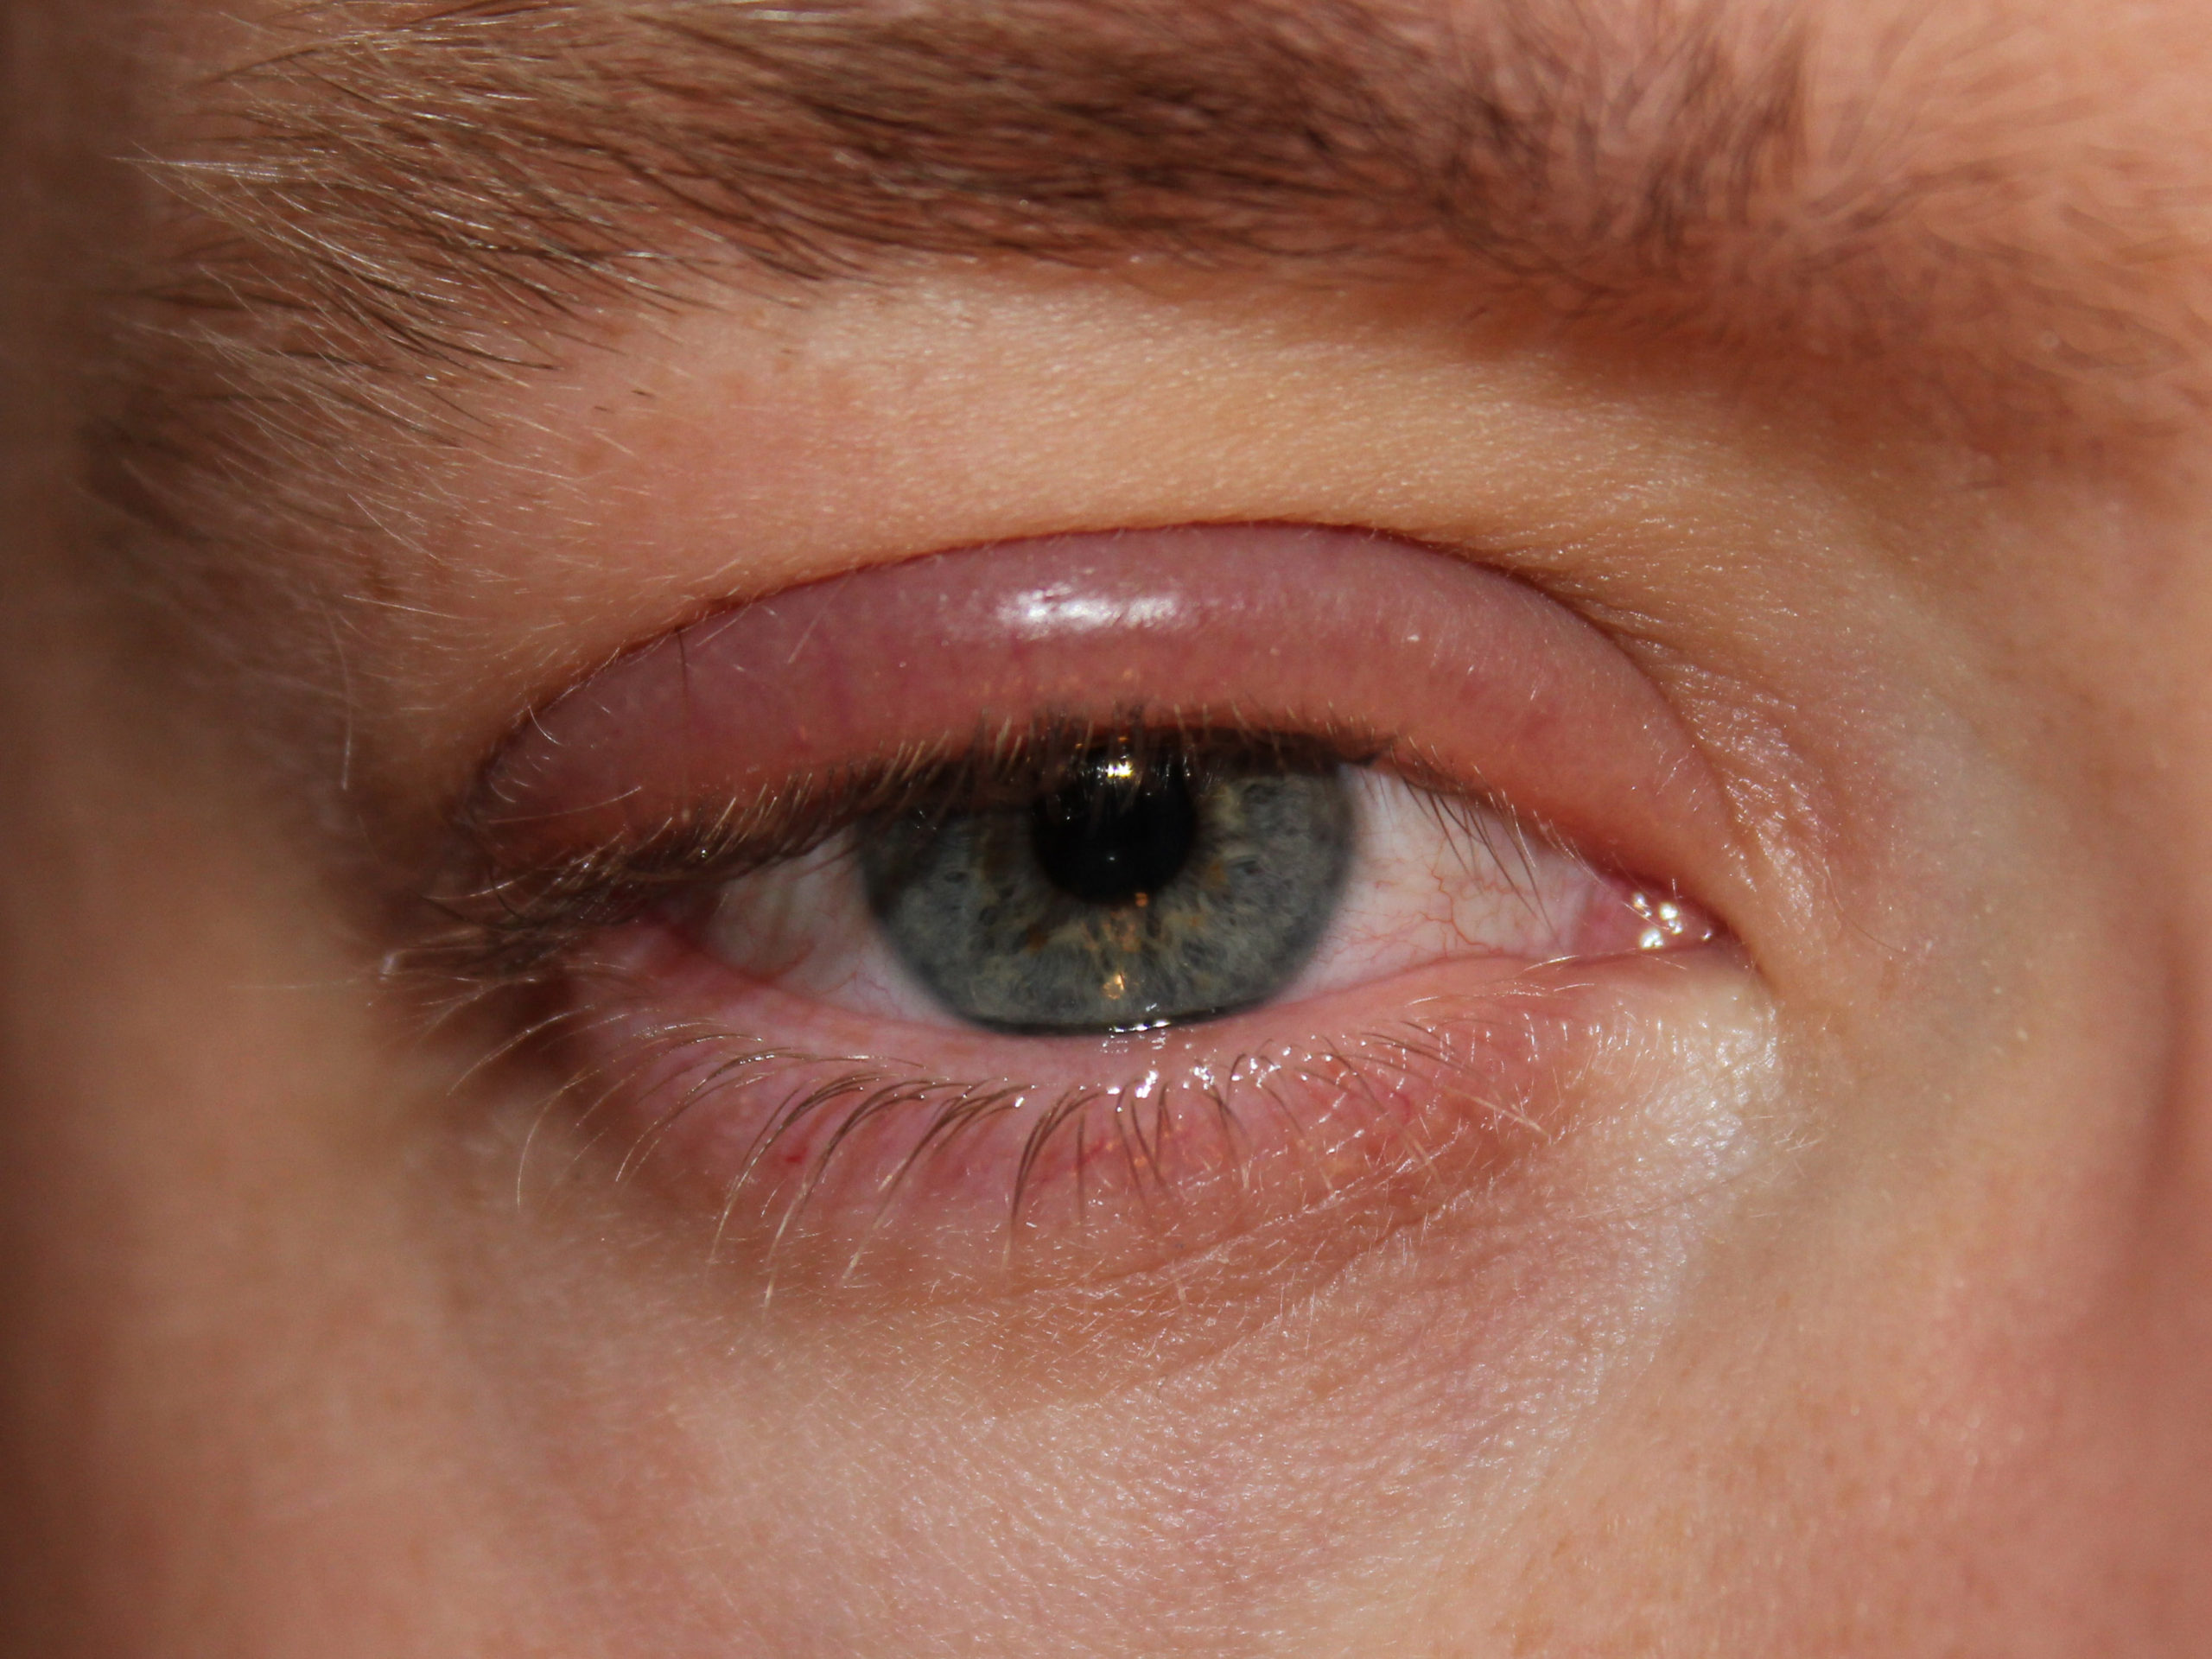 blepharitis - swollen eyelid